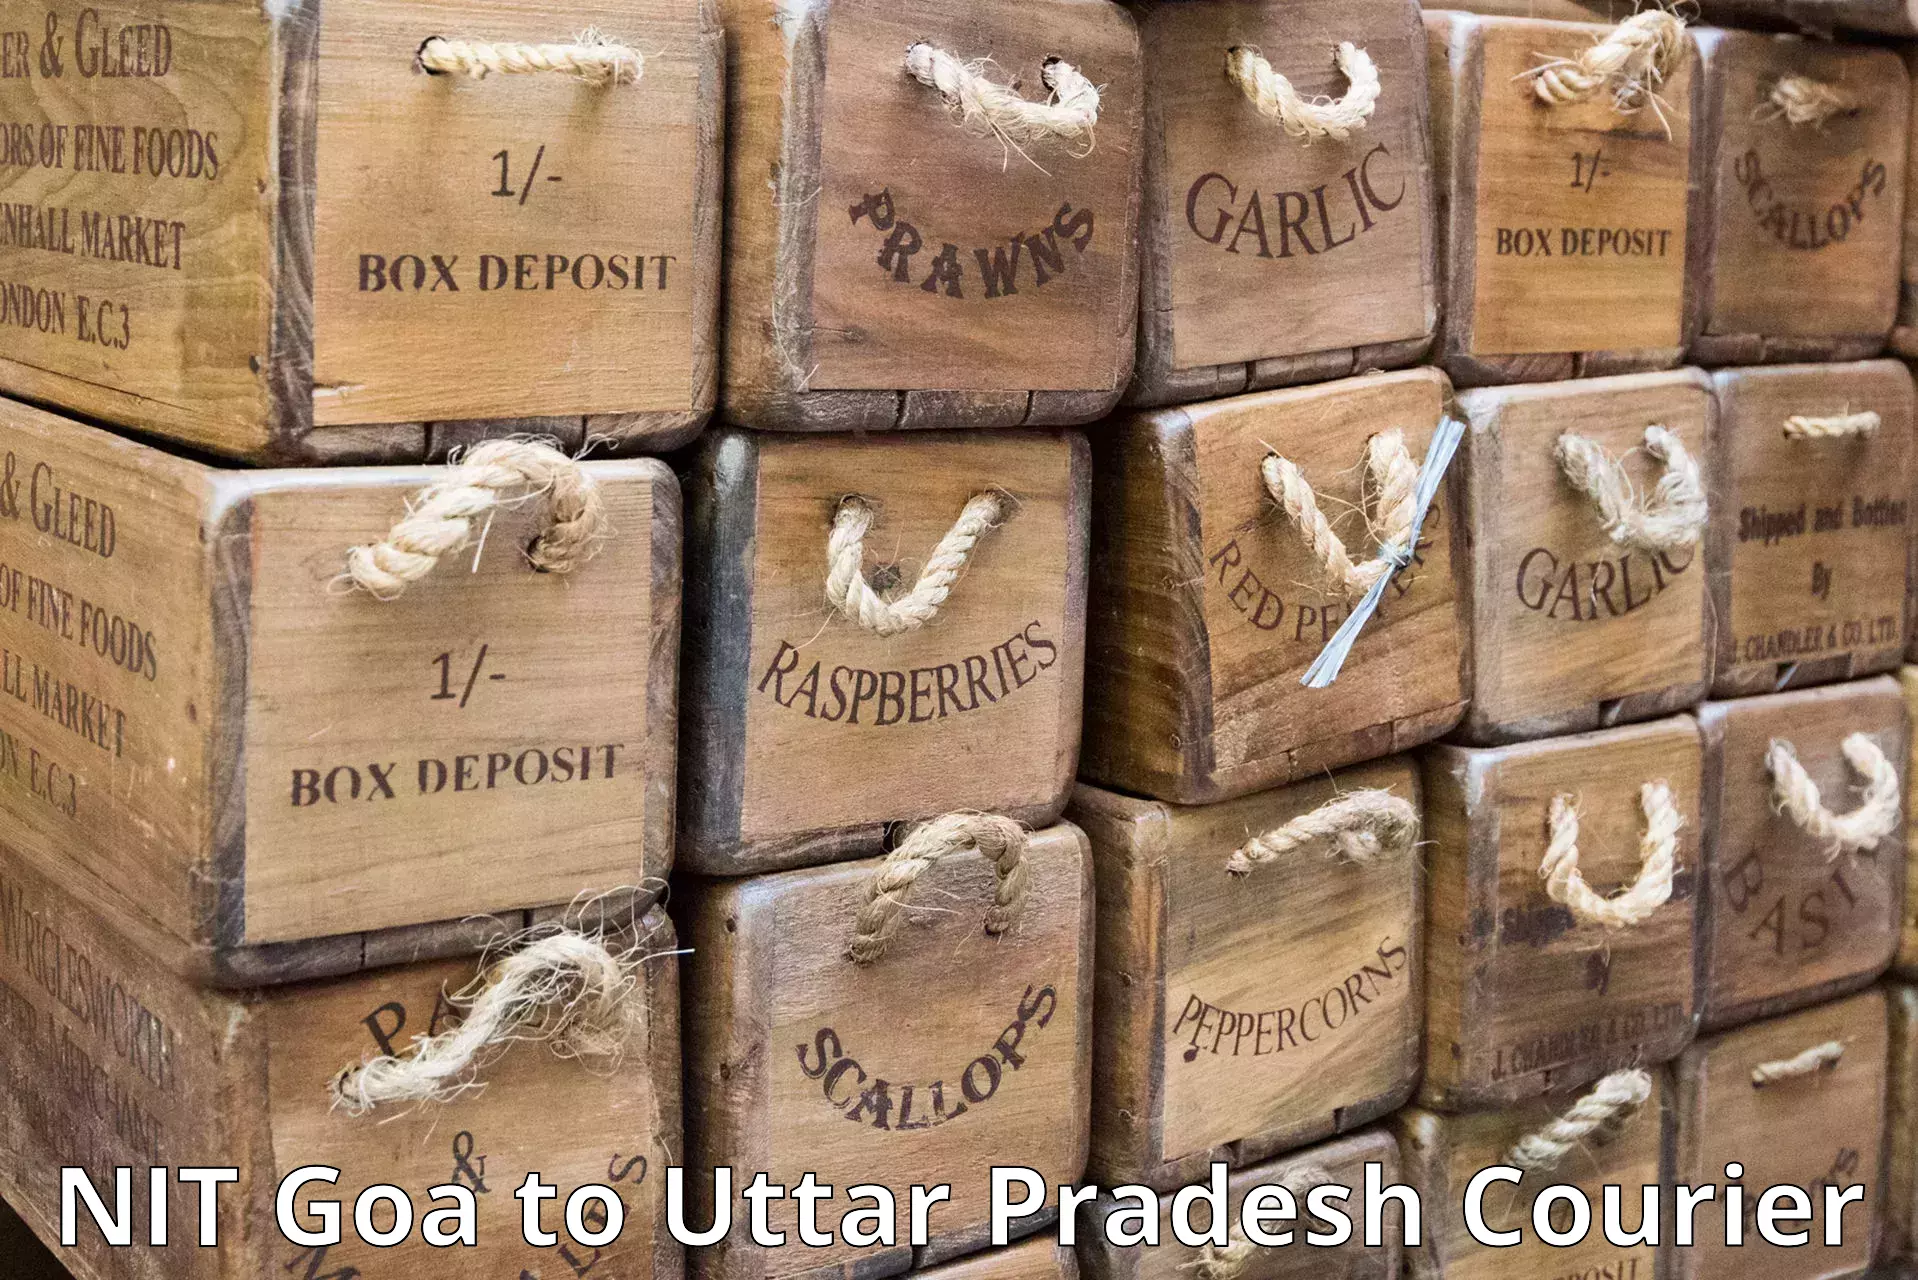 Urban courier service NIT Goa to Chhata